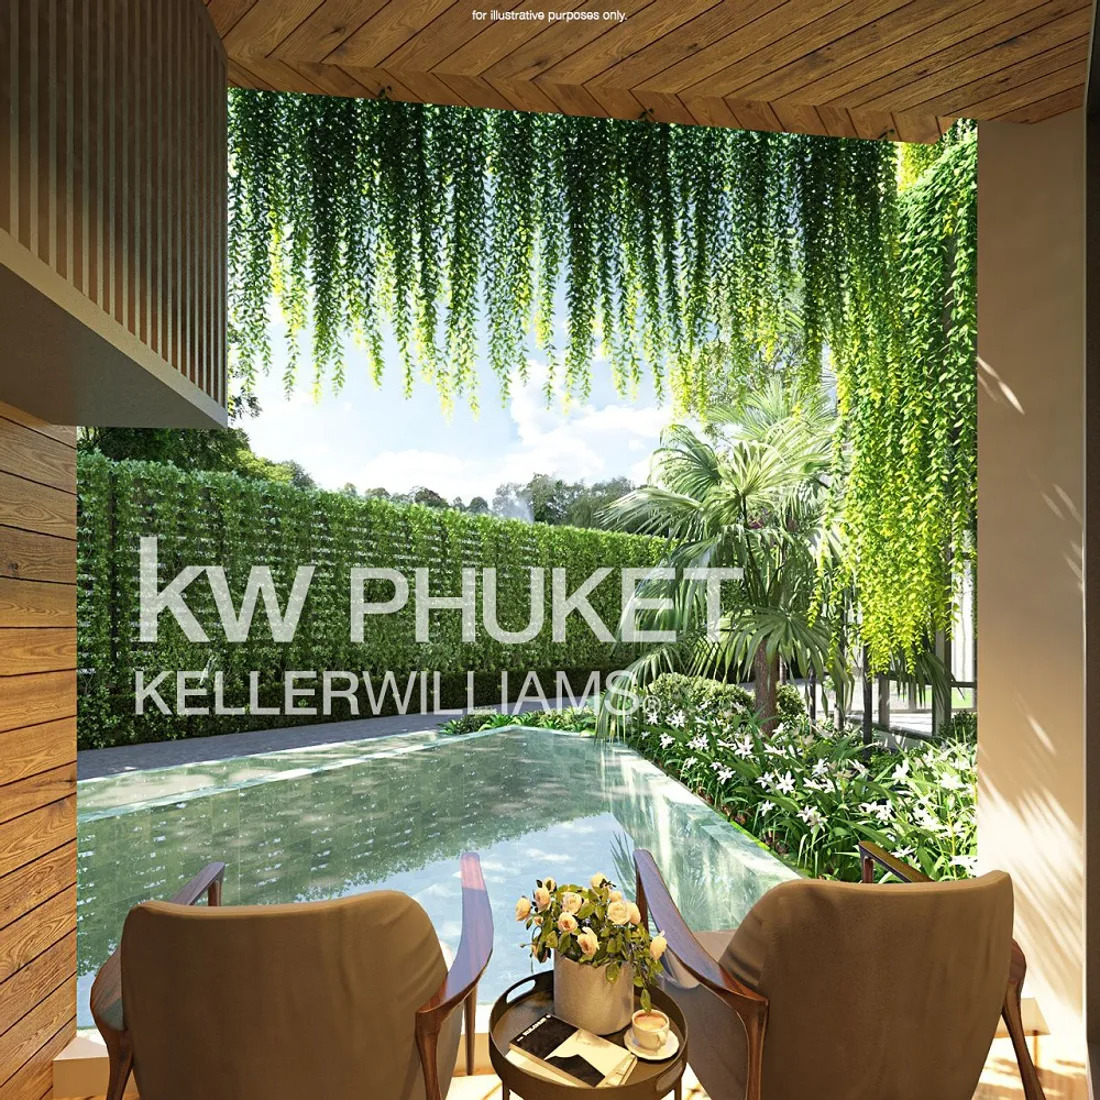 ยูนิตนี้ขายได้เร็ว อย่าพลาด โทรหาฉันวันนี้ Serene Condominium Phuket ราคา4115250บ.ขนาด 31 ตารางเมตร 1 ห้องนอน 1 ห้องน้ำ ใกล้ทะเลอันดา รูปที่ 1